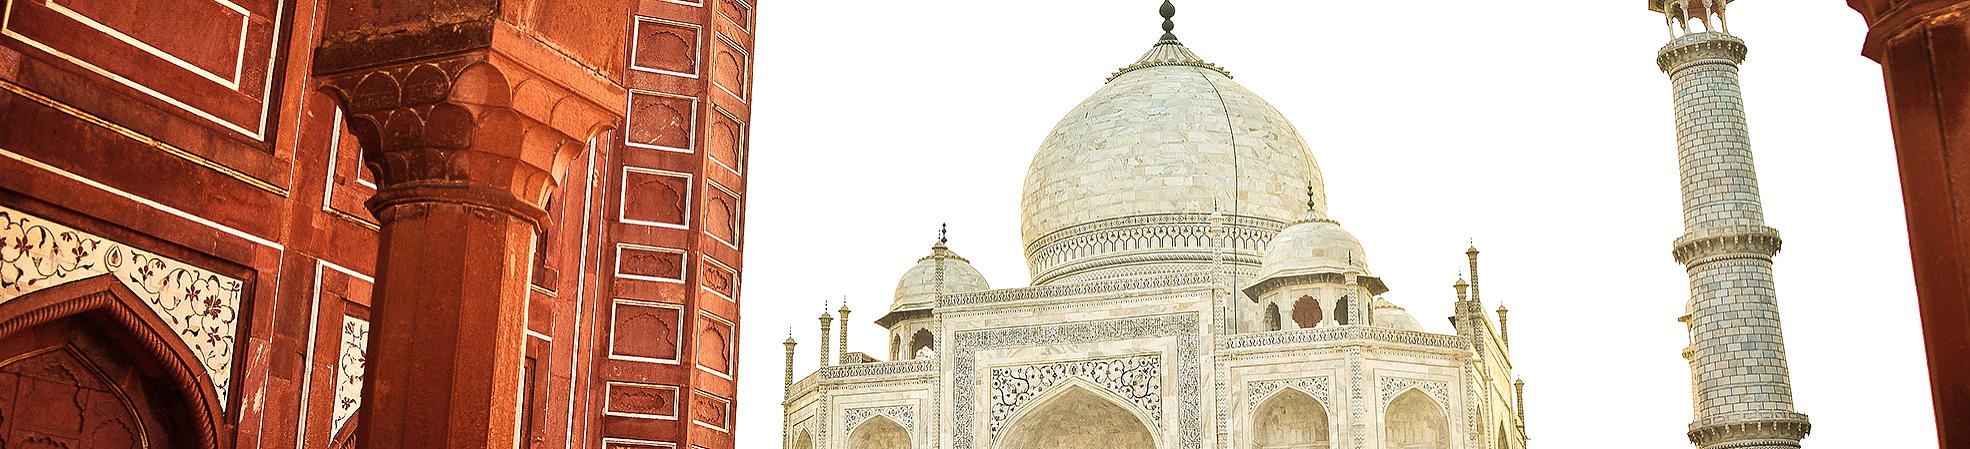 Dos and Don'ts for Visiting the Taj Mahal